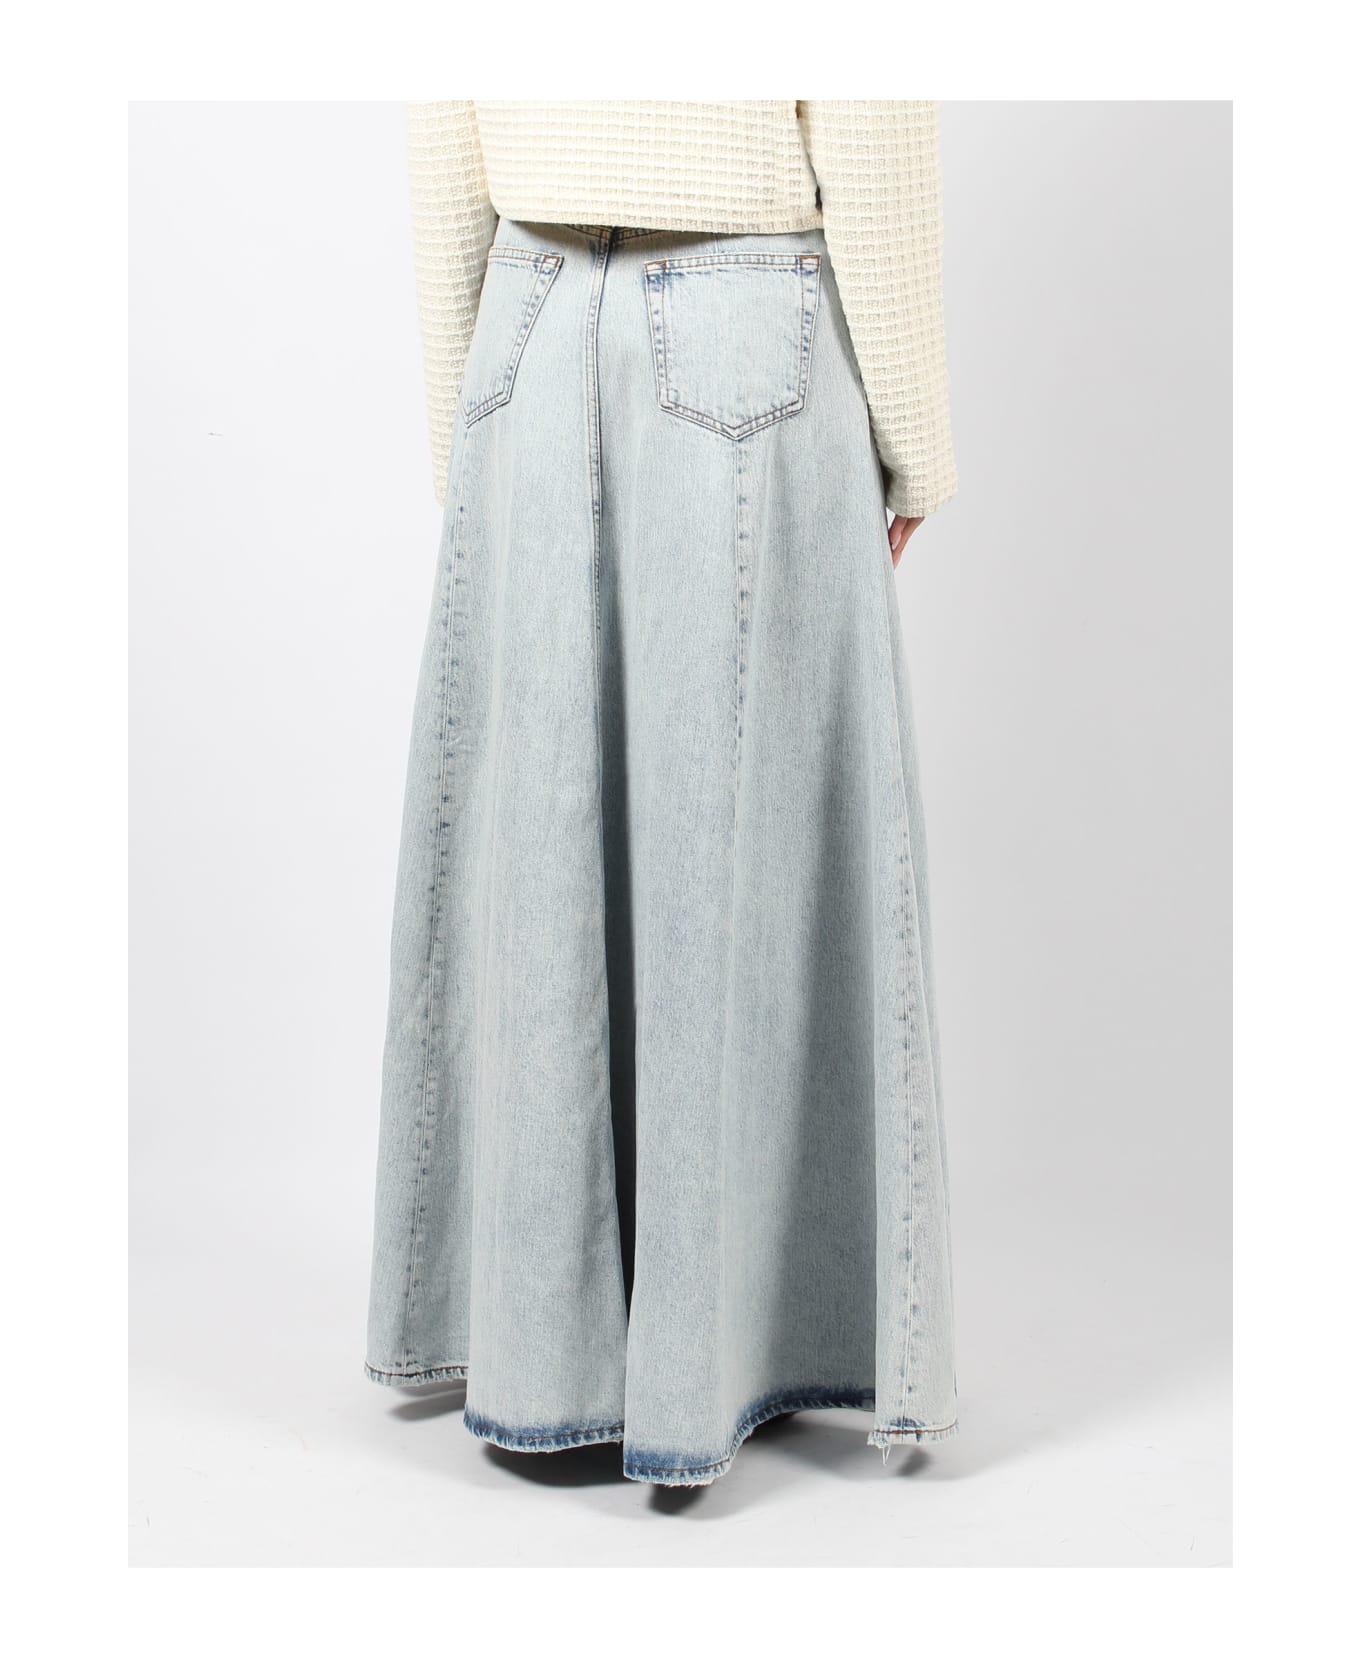 Haikure Serenity Stromboli Blue Denim Skirt - Blue スカート